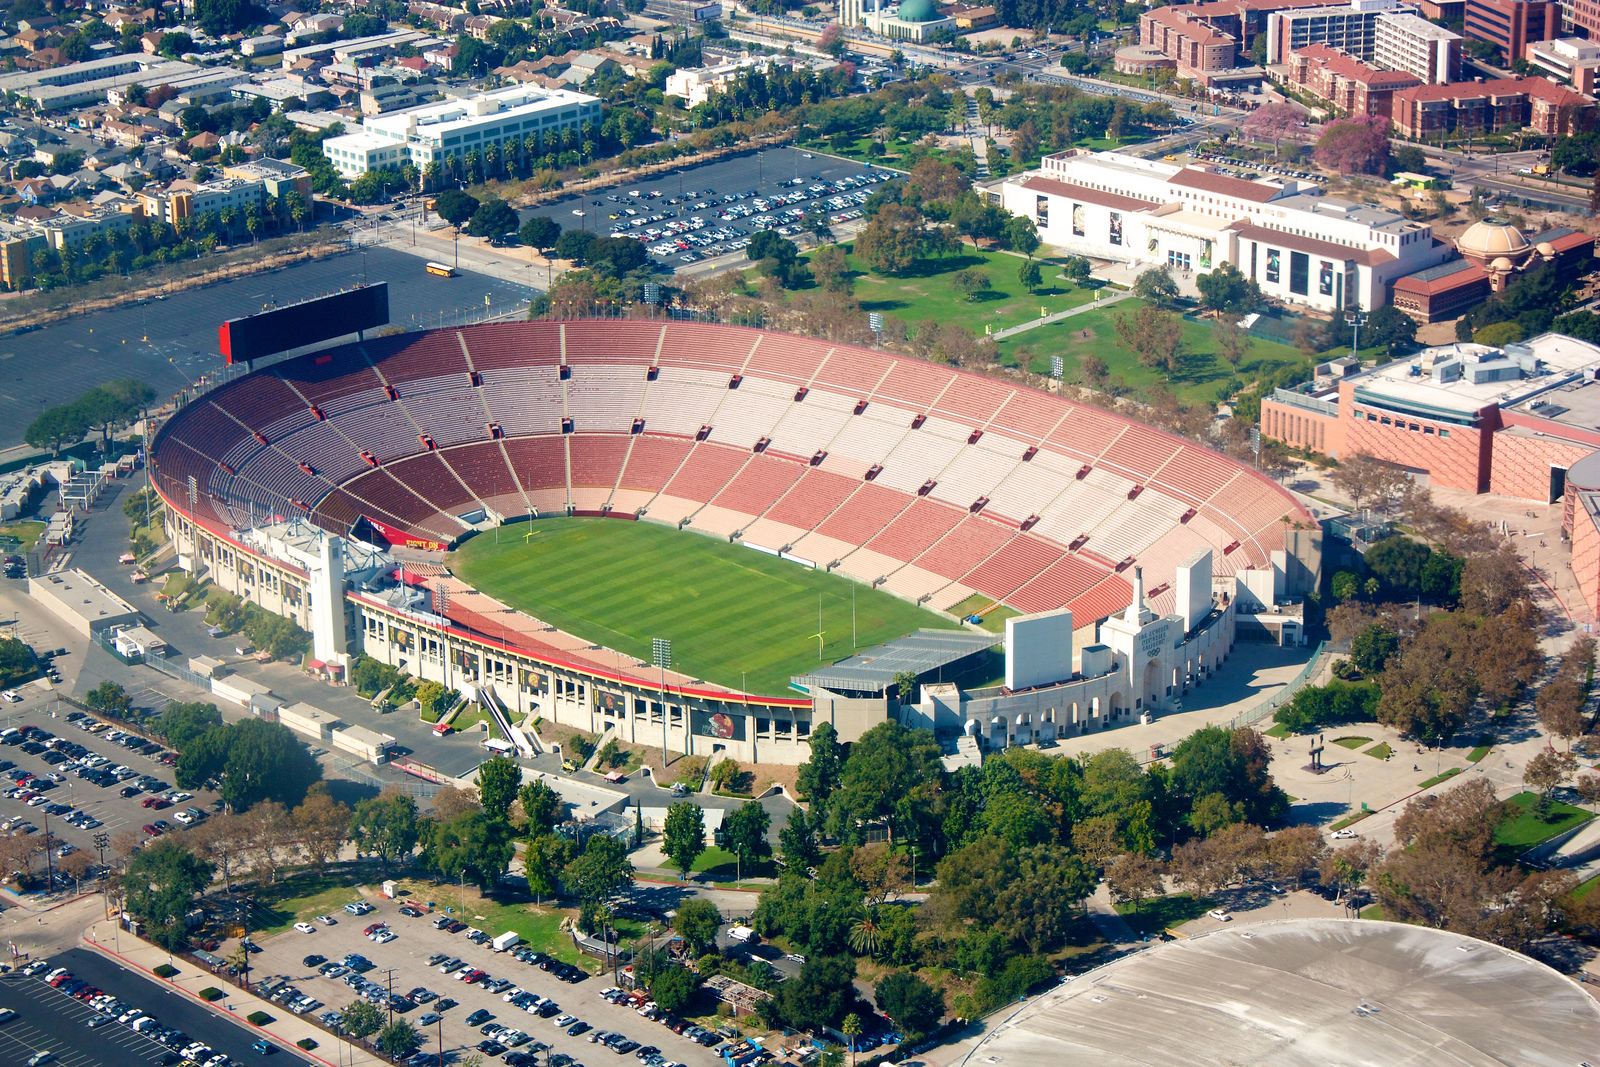 Los Angeles Coliseum, um patrimônio americano